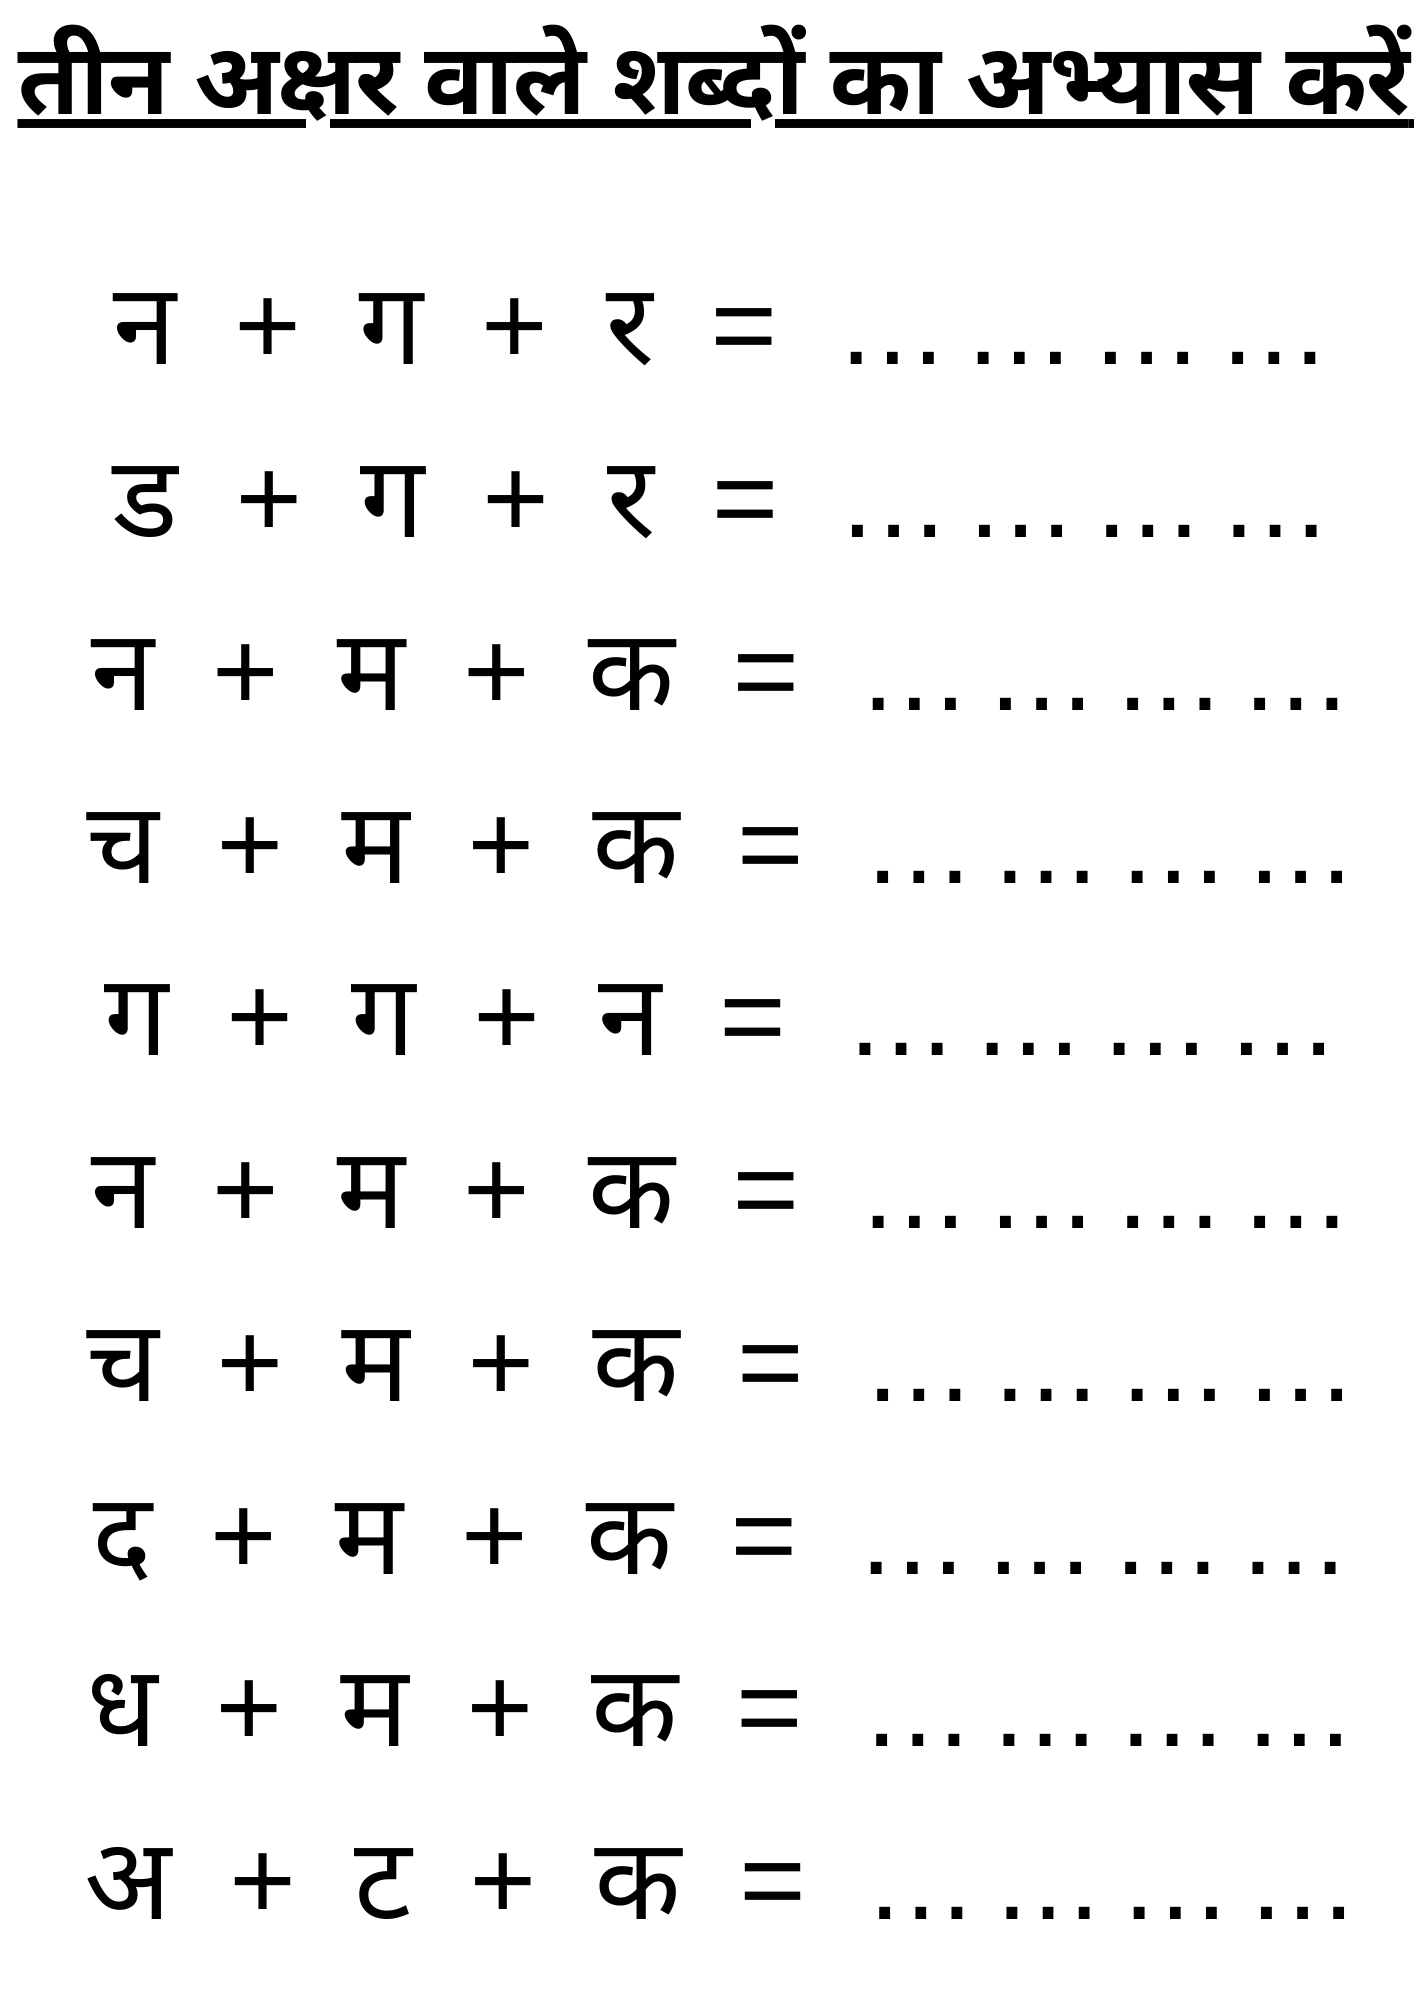 तीन अक्षर वाले शब्दों का अभ्यास करें | 3 Akshar Wale Sabh | Hindi Worksheet